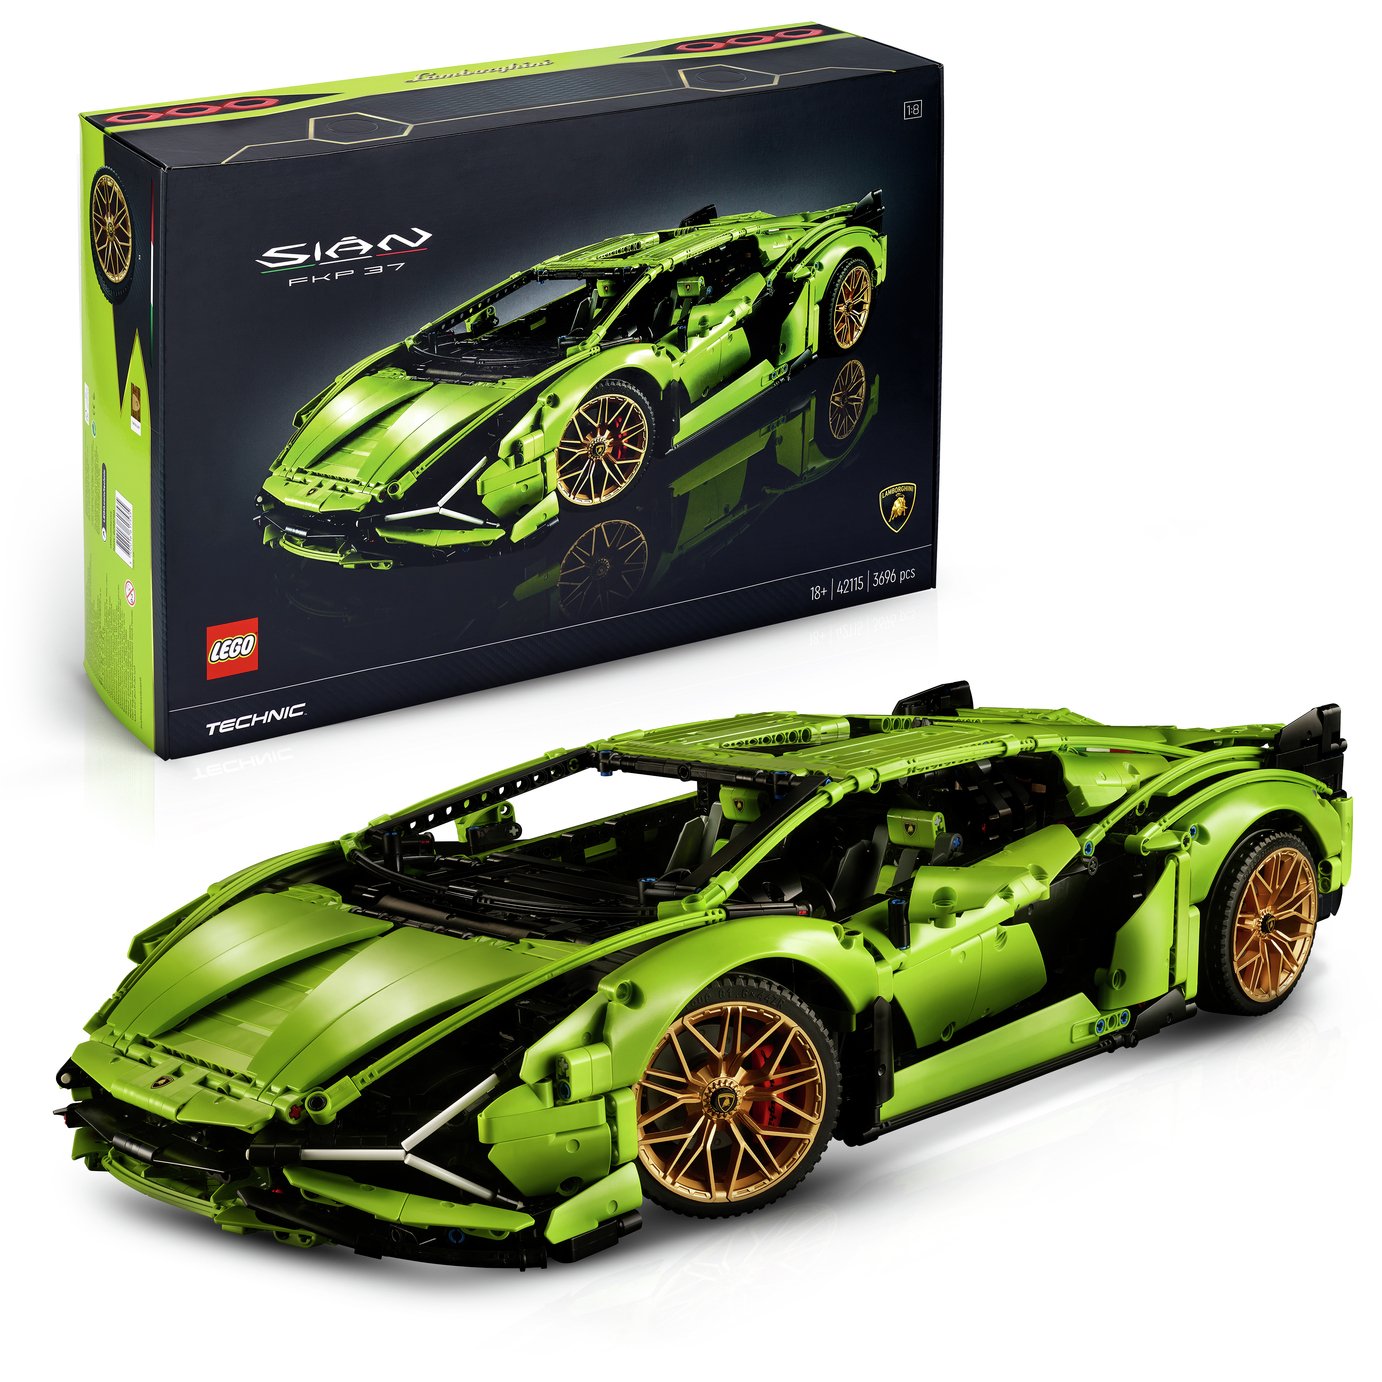 LEGO Technic Lamborghini Sián FKP 37 Car Model Set 42115